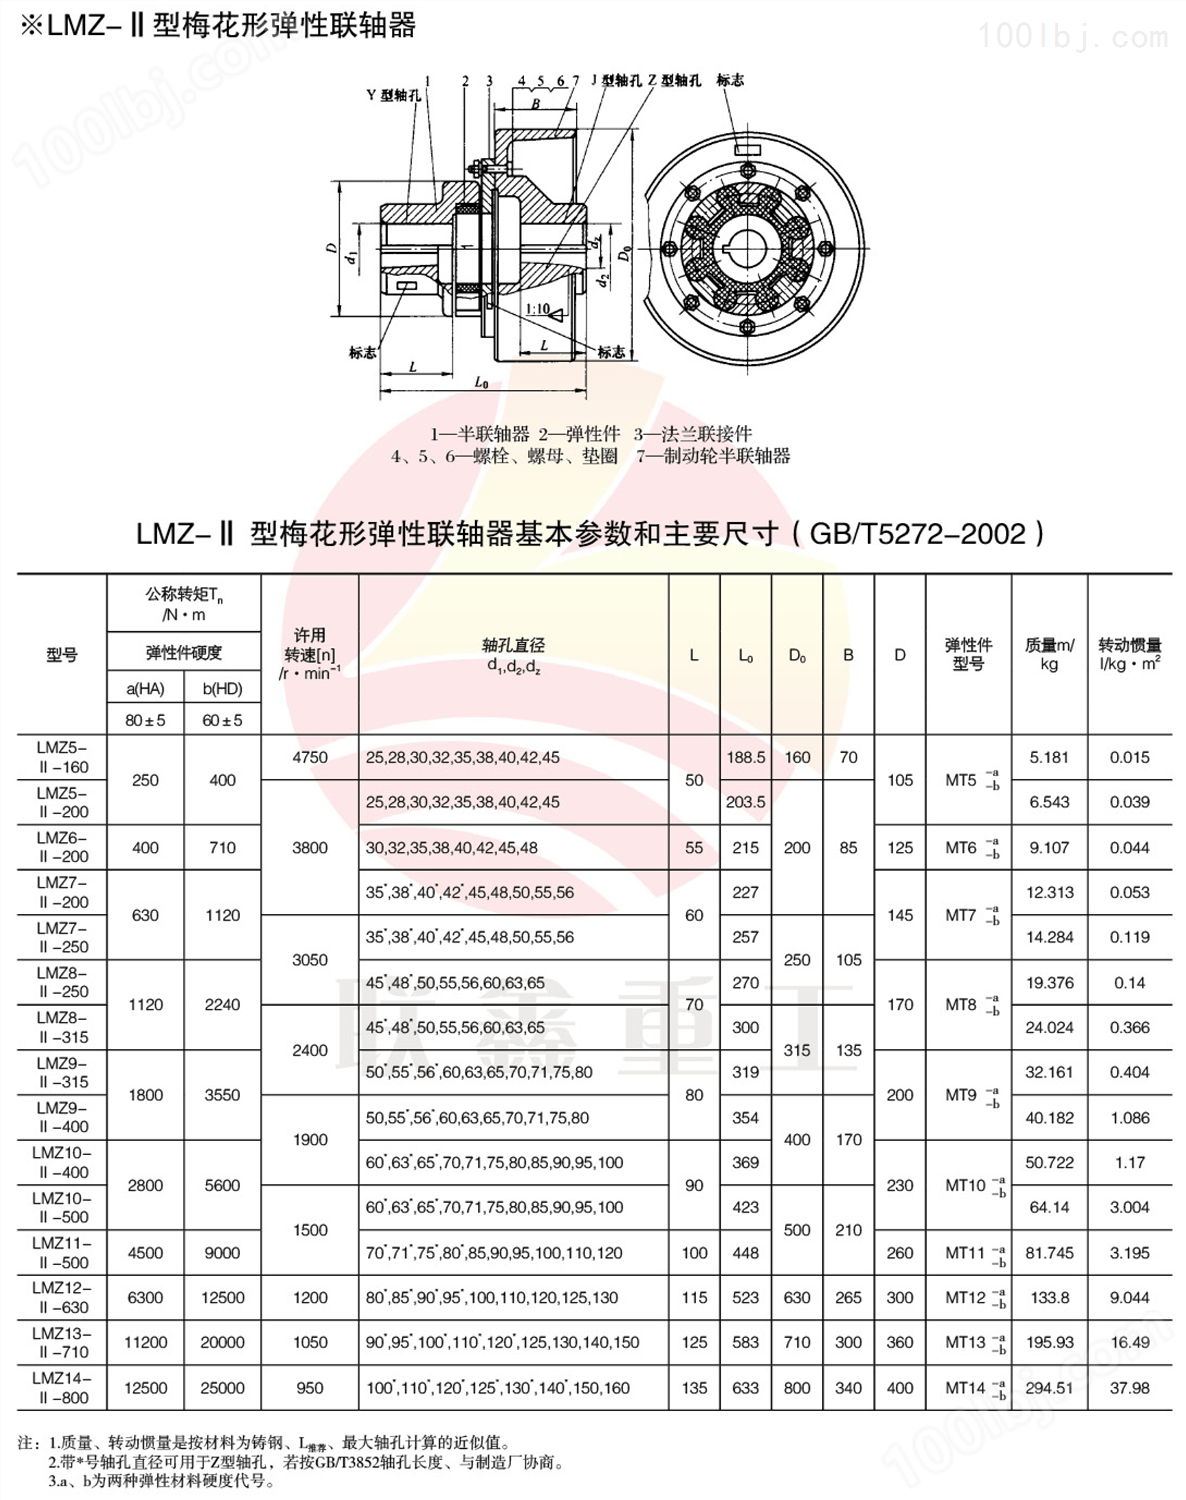 MLL-II(LMZ-II)整体制动轮梅花联轴器